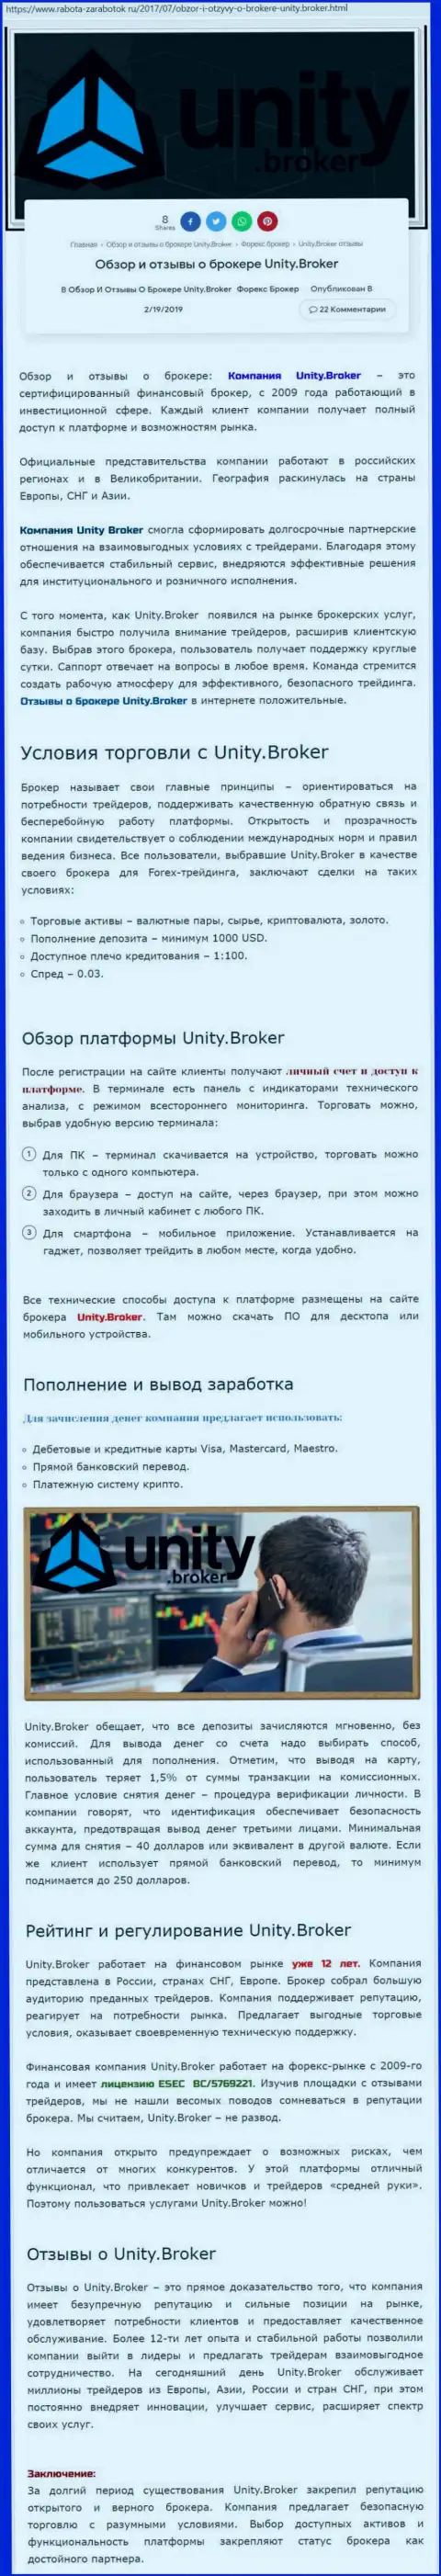 Обзорная информация Форекс организации Unity Broker на web-сайте rabota-zarabotok ru